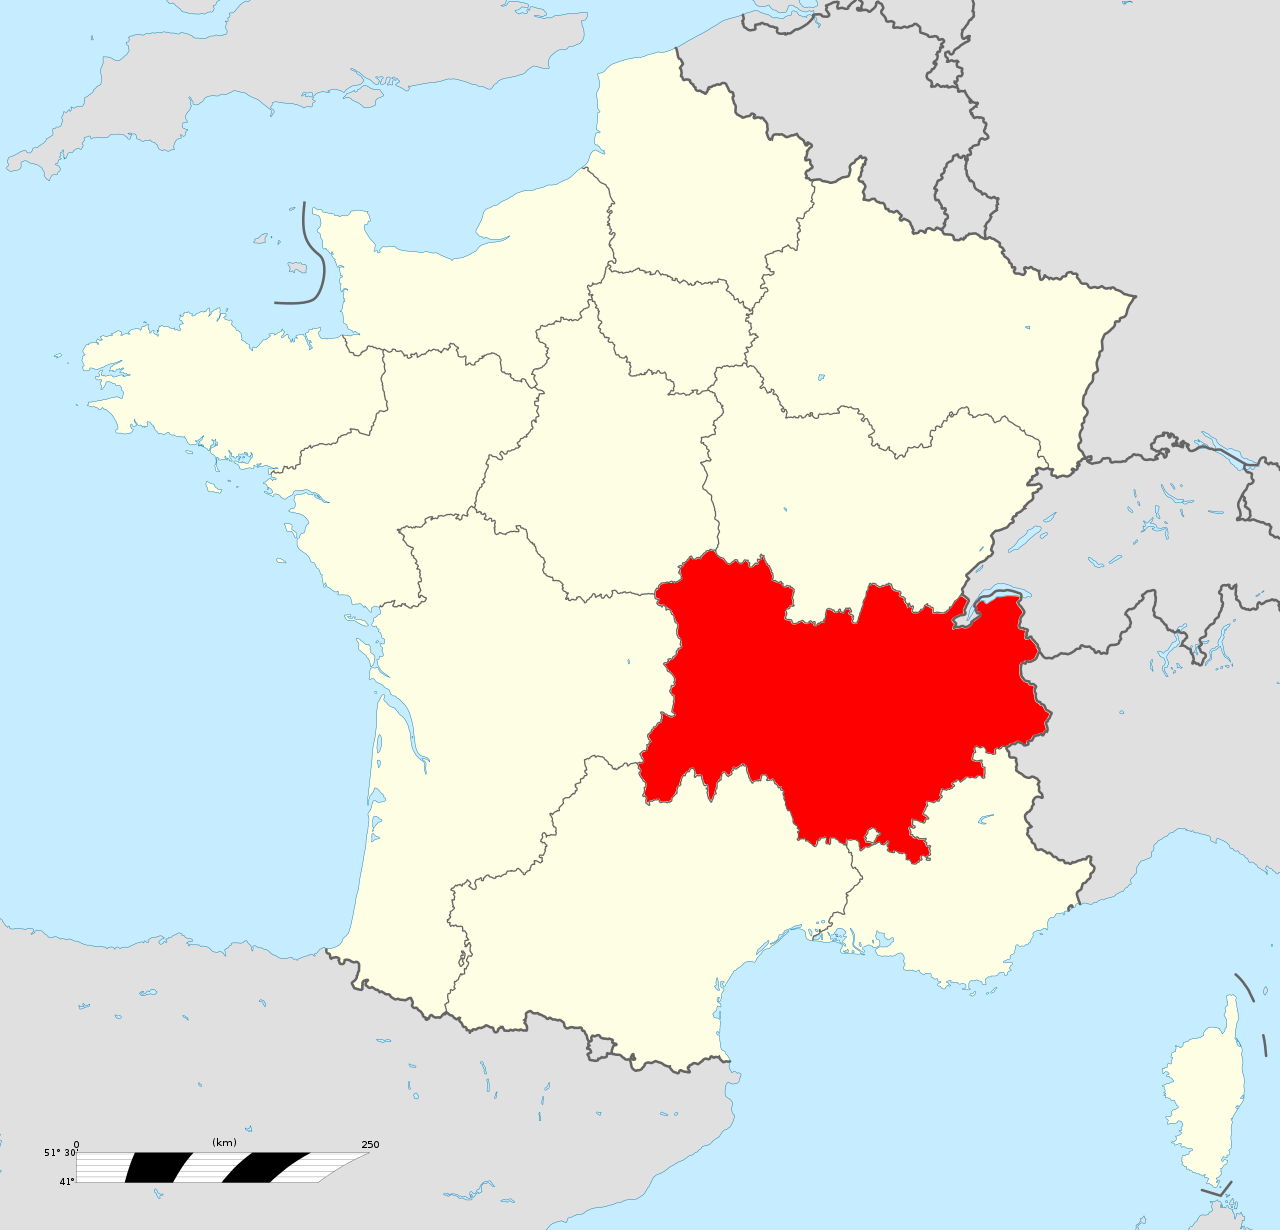 Sanatorium Hl 4 Urbex locatie in of rond de regio Auvergne-Rhône-Alpes (Ain), France